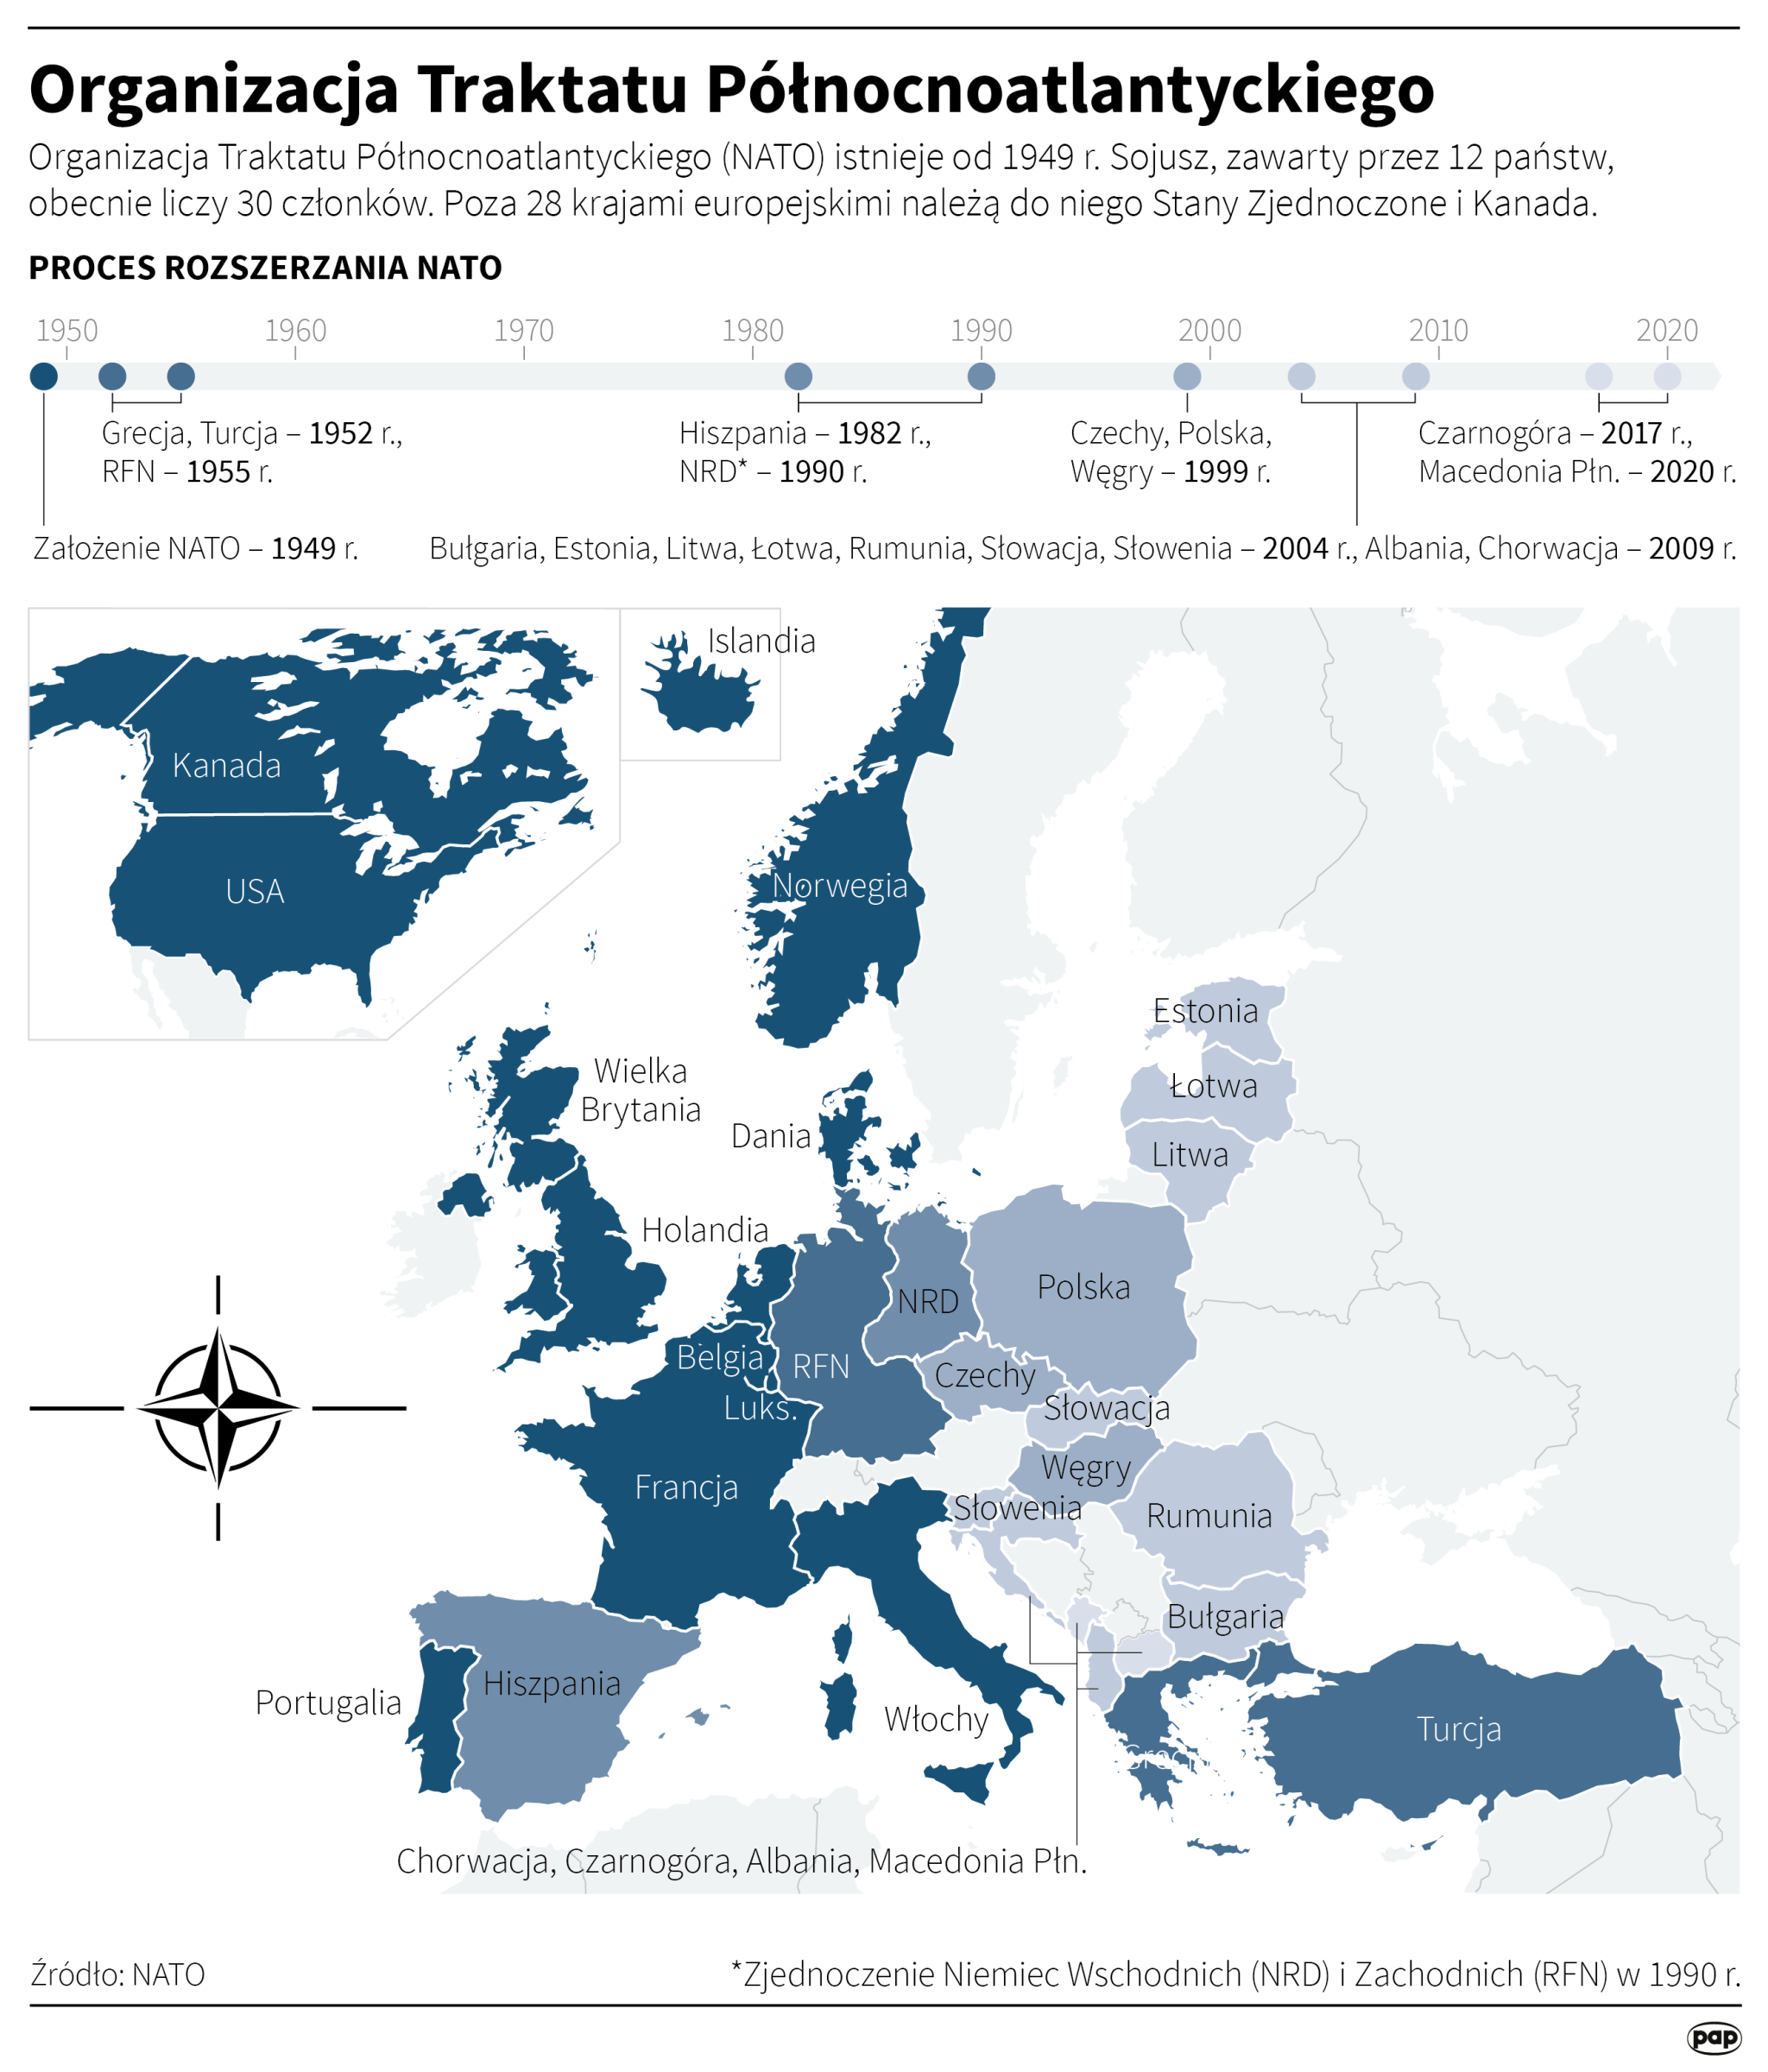 Obecnie NATO składa się z 30 państw